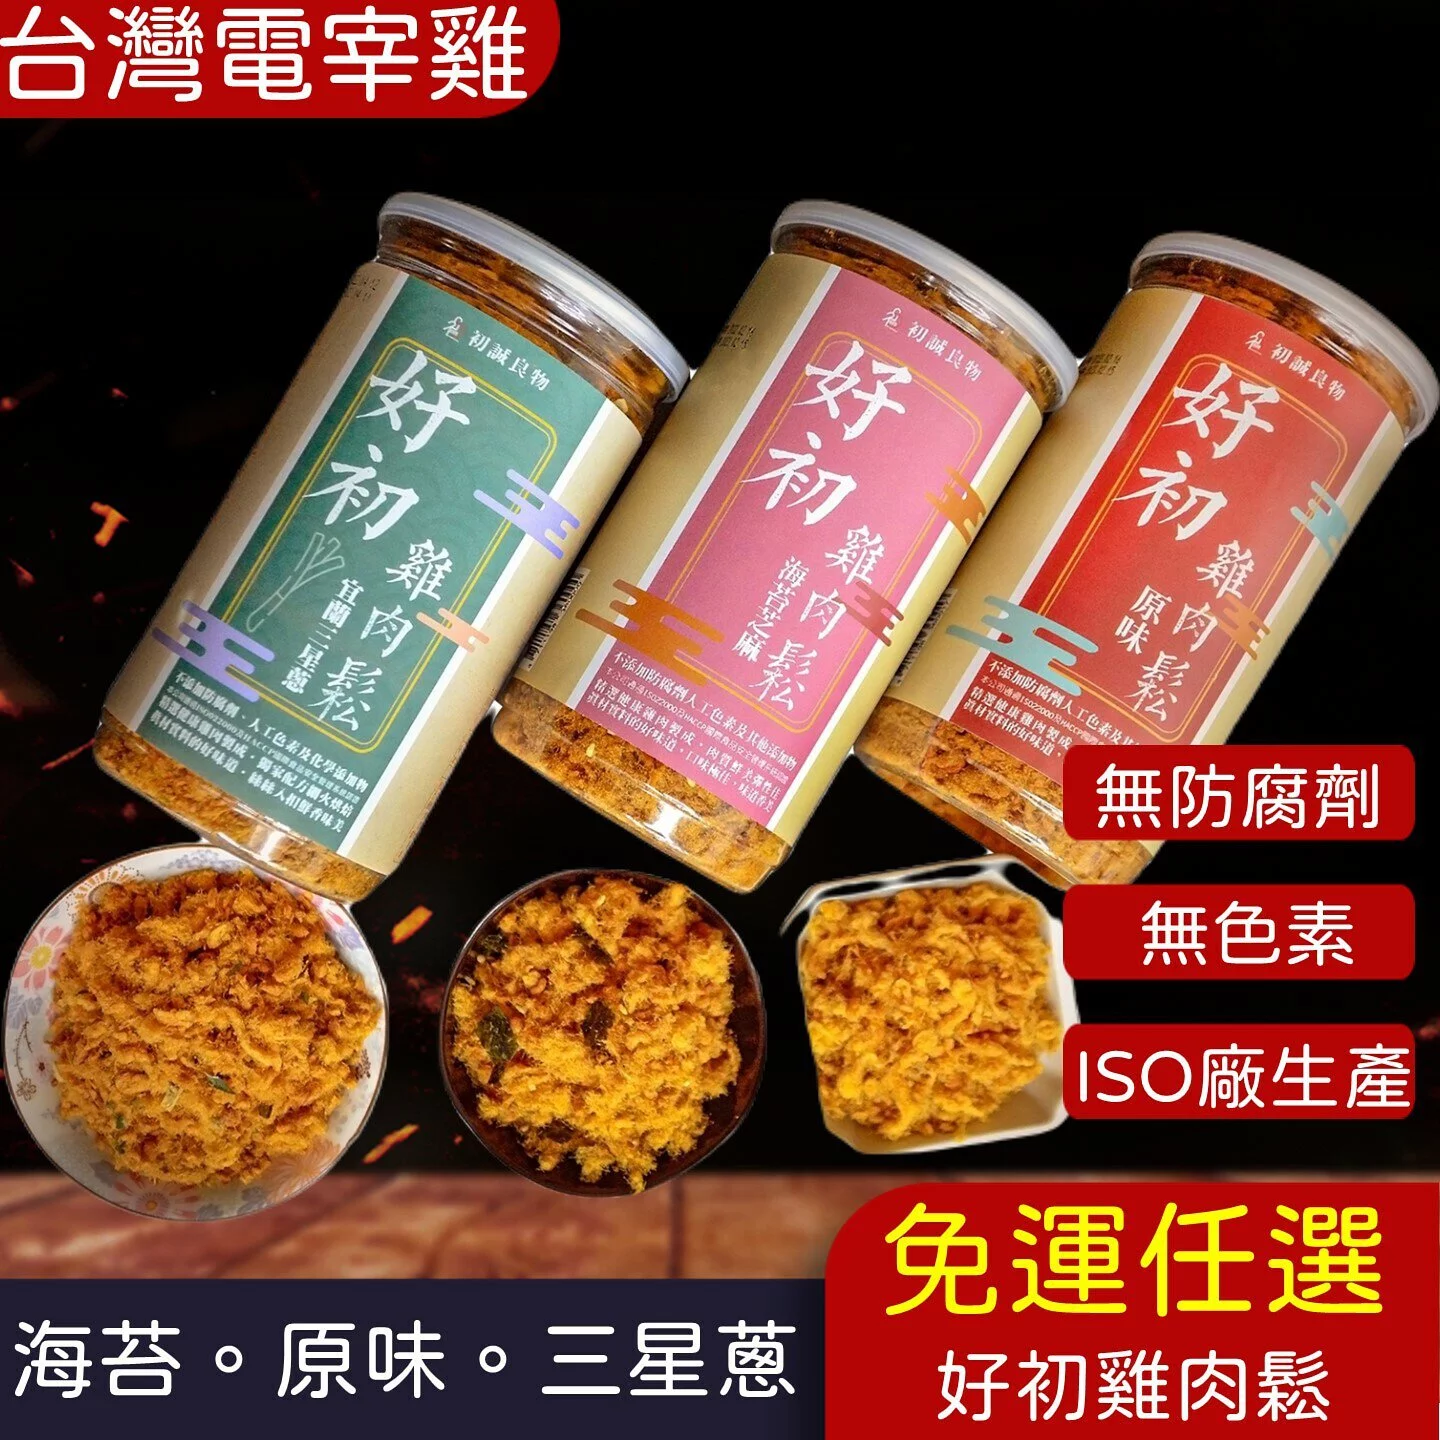 (免運多組)ISO廠生產【好初雞肉鬆】三星蔥.海苔.原味(200g/罐)(8罐)🌞90B025